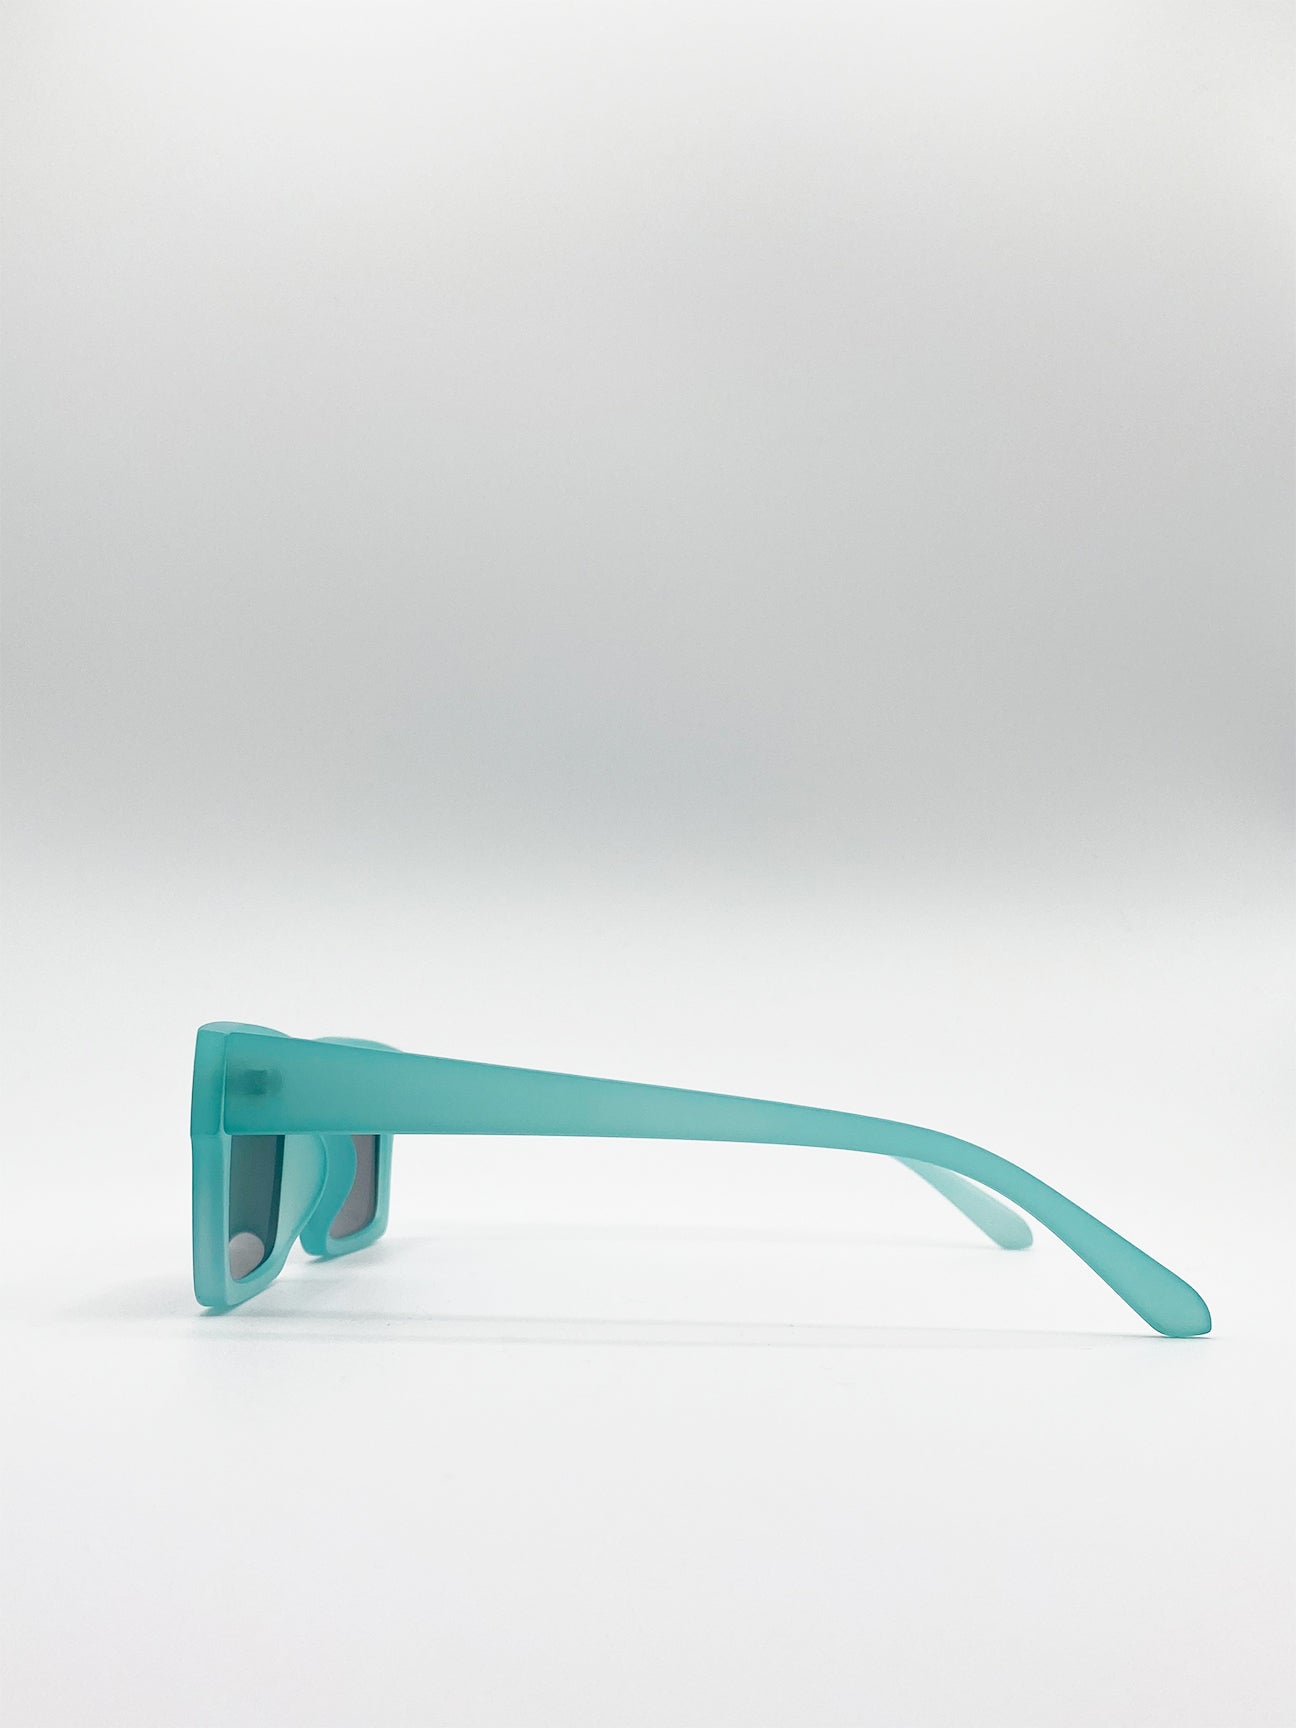 Square Sunglasses In Matte Mint